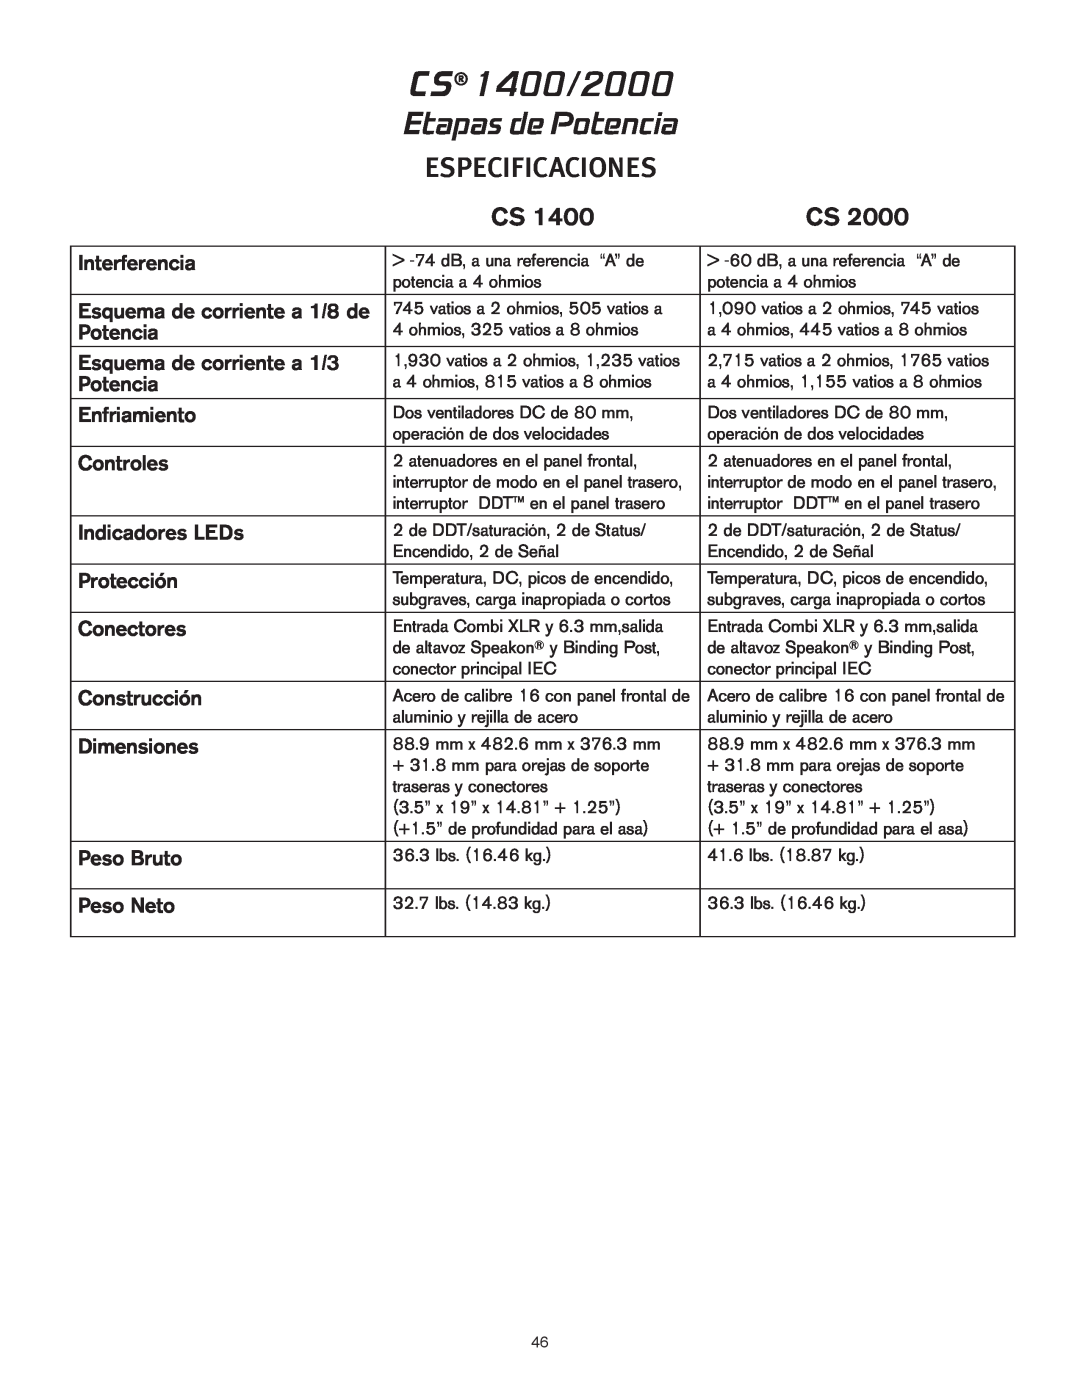 Peavey owner manual CS 1400/2000, Etapas de Potencia, Especificaciones, Interferencia 